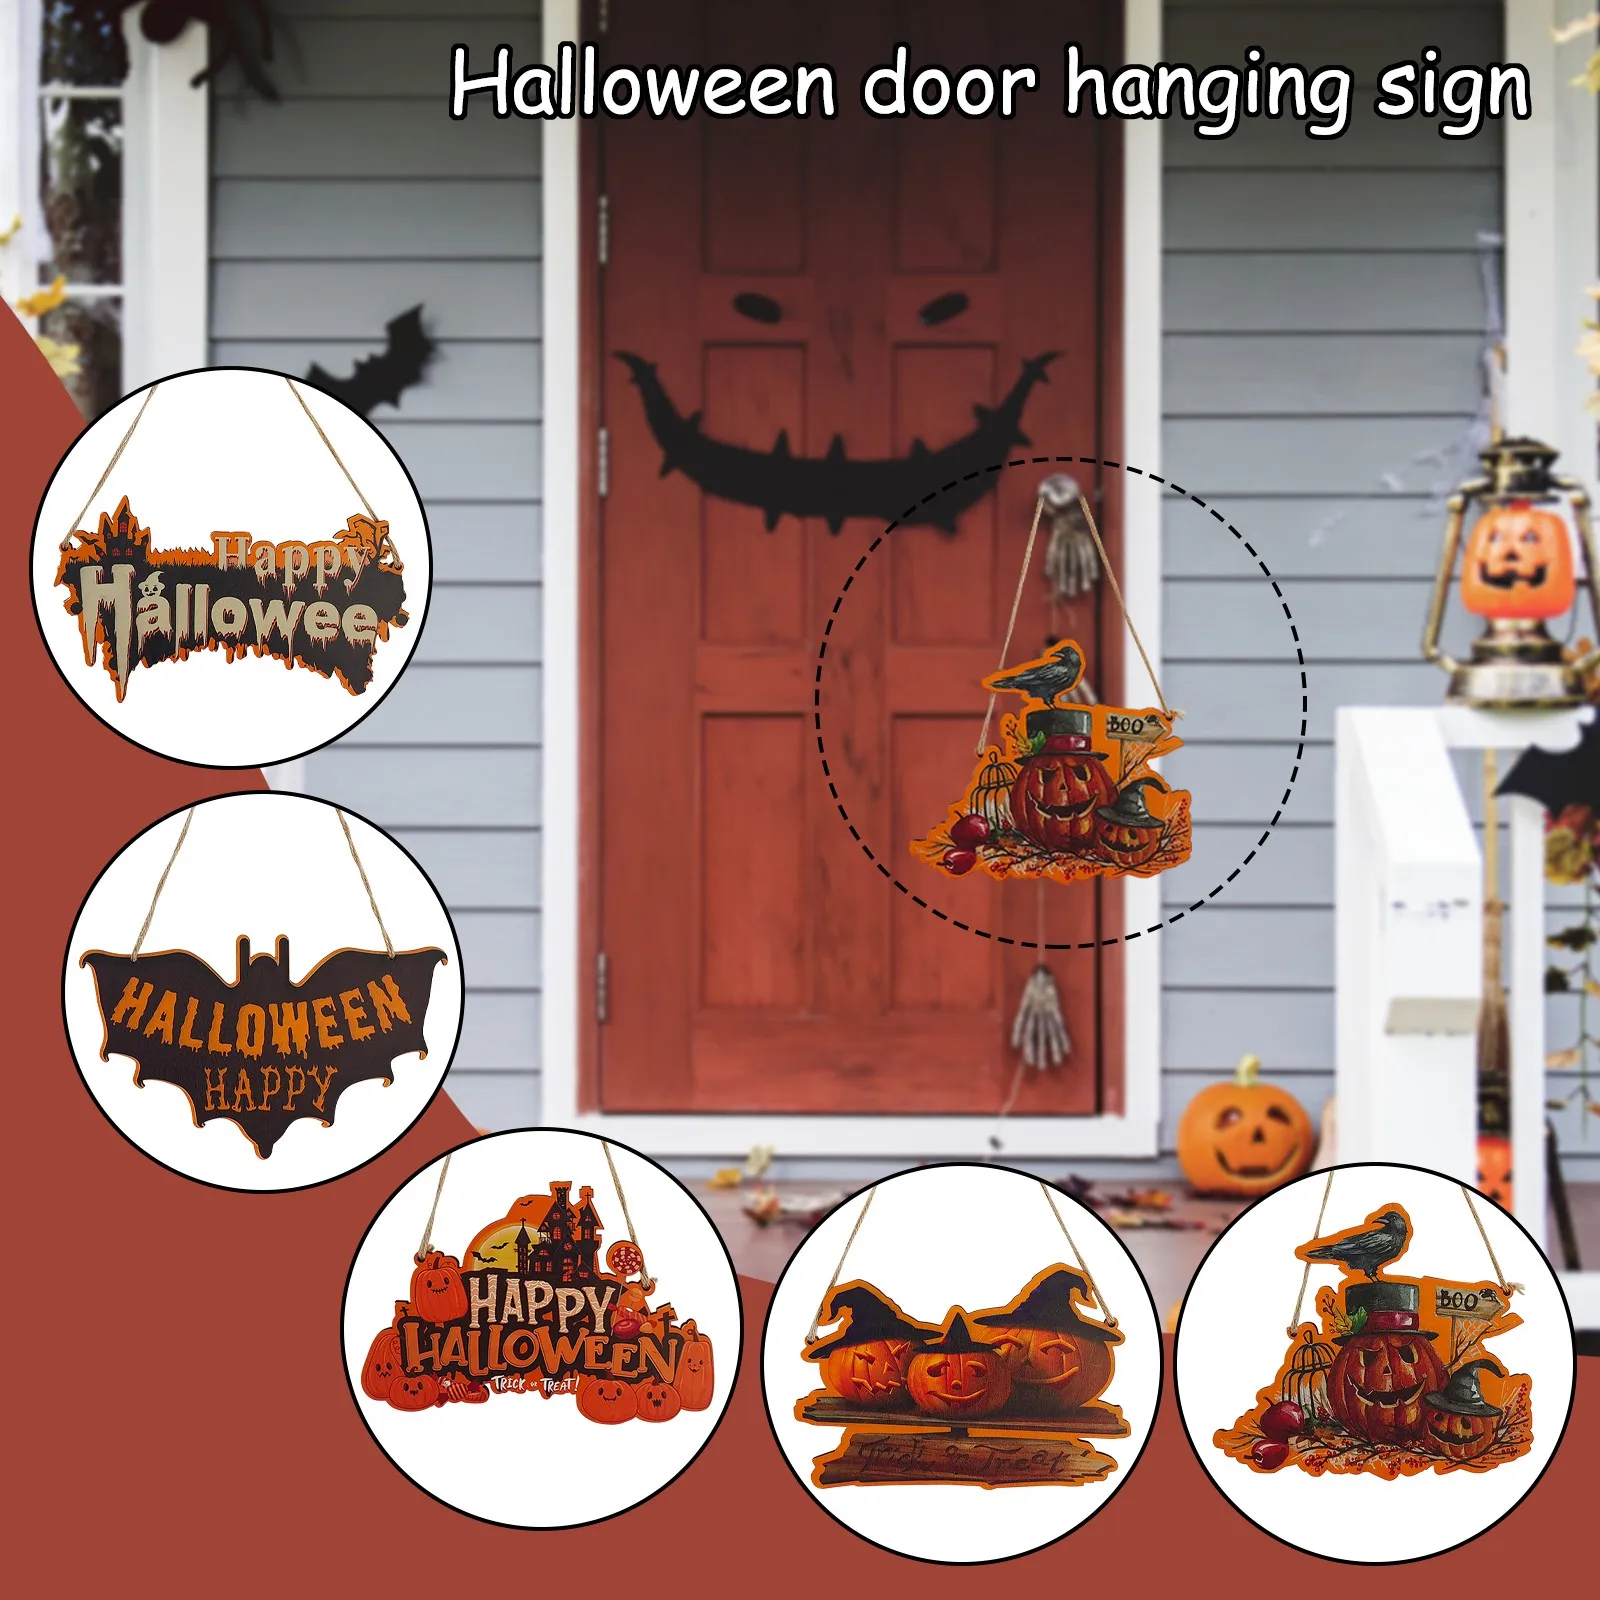 Details about   Hanging Pumpkin Happy Halloween Ornament Door Wall Pendant Decoration Home Prop 